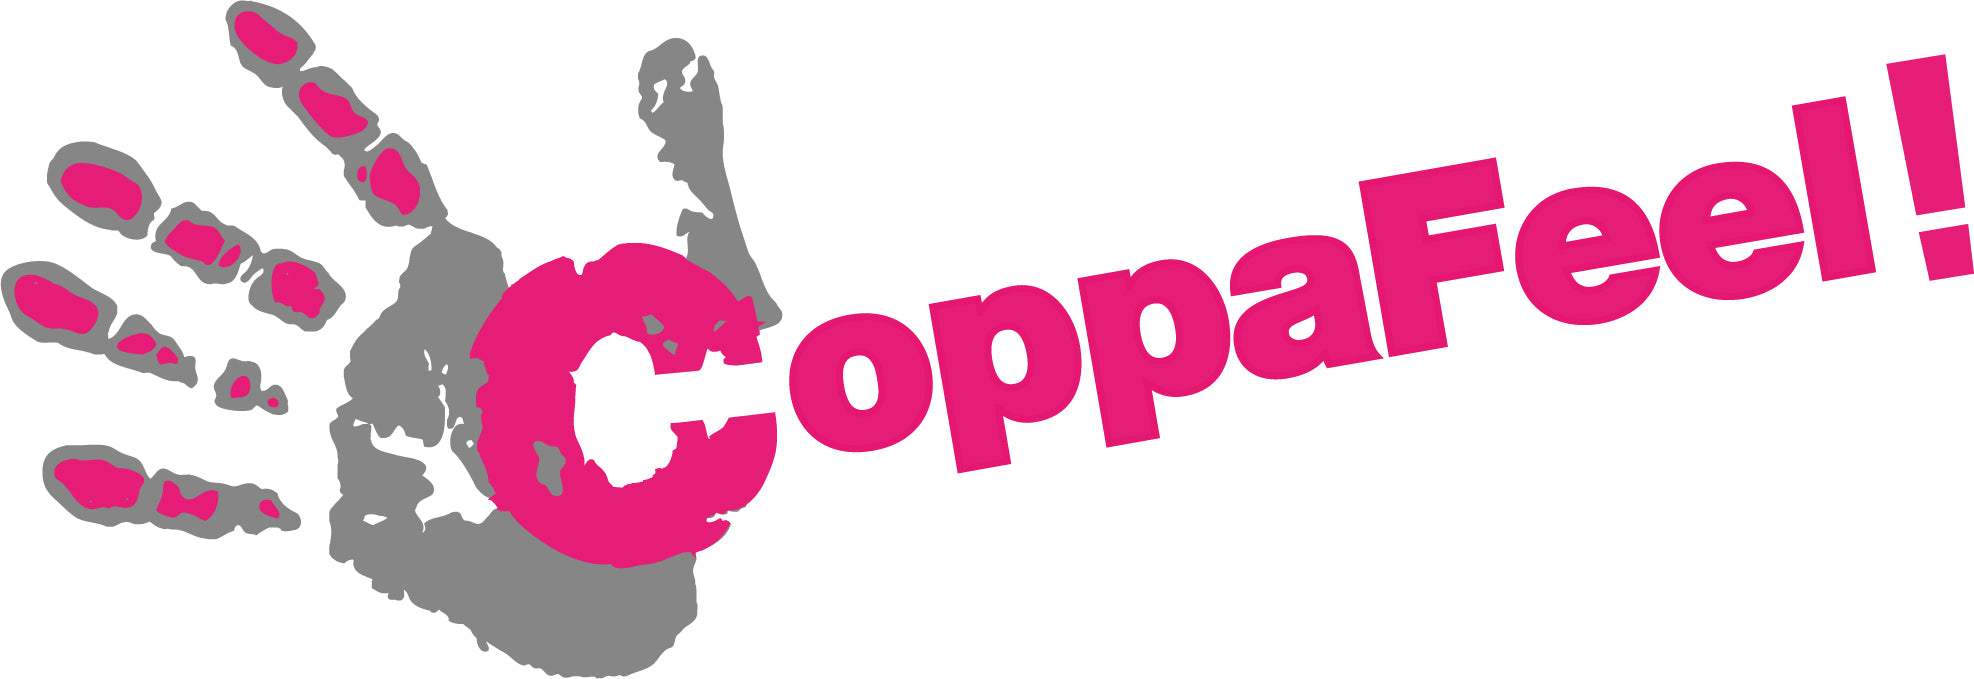 Coppafeel logo maaree